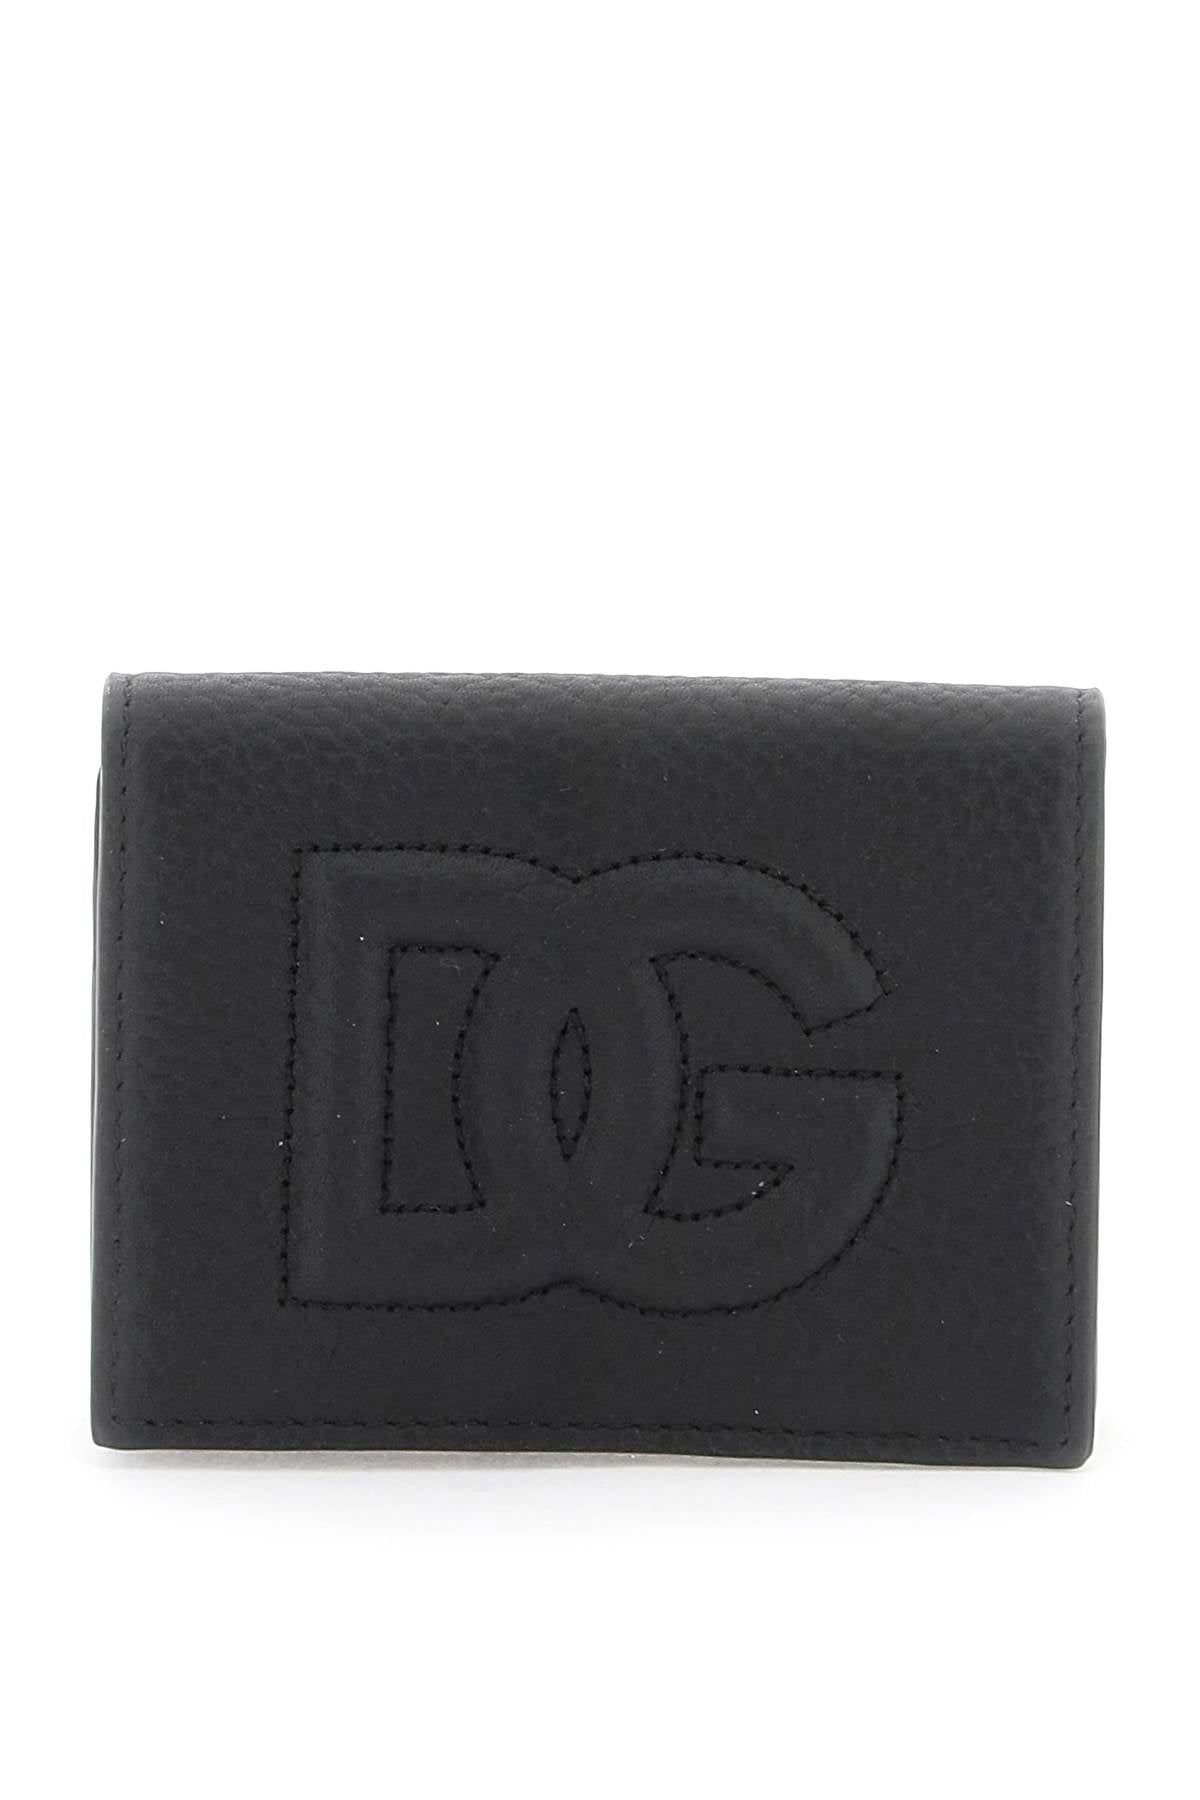 Dolce & Gabbana Dolce & gabbana dg logo card holder